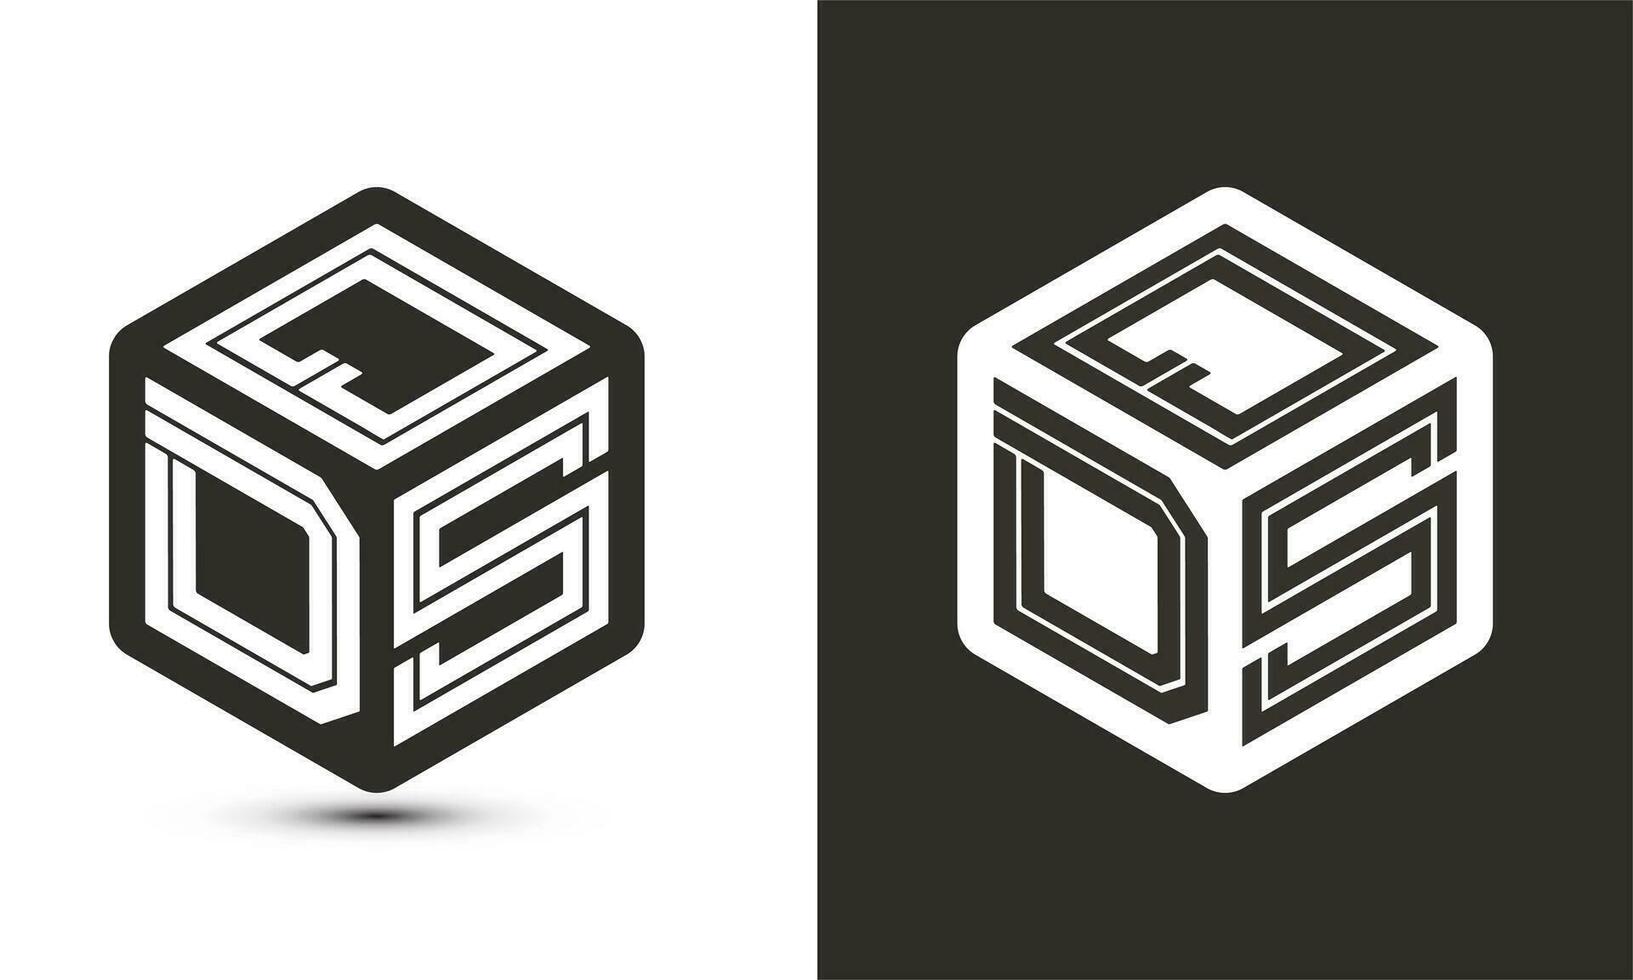 qds brief logo ontwerp met illustrator kubus logo, vector logo modern alfabet doopvont overlappen stijl.